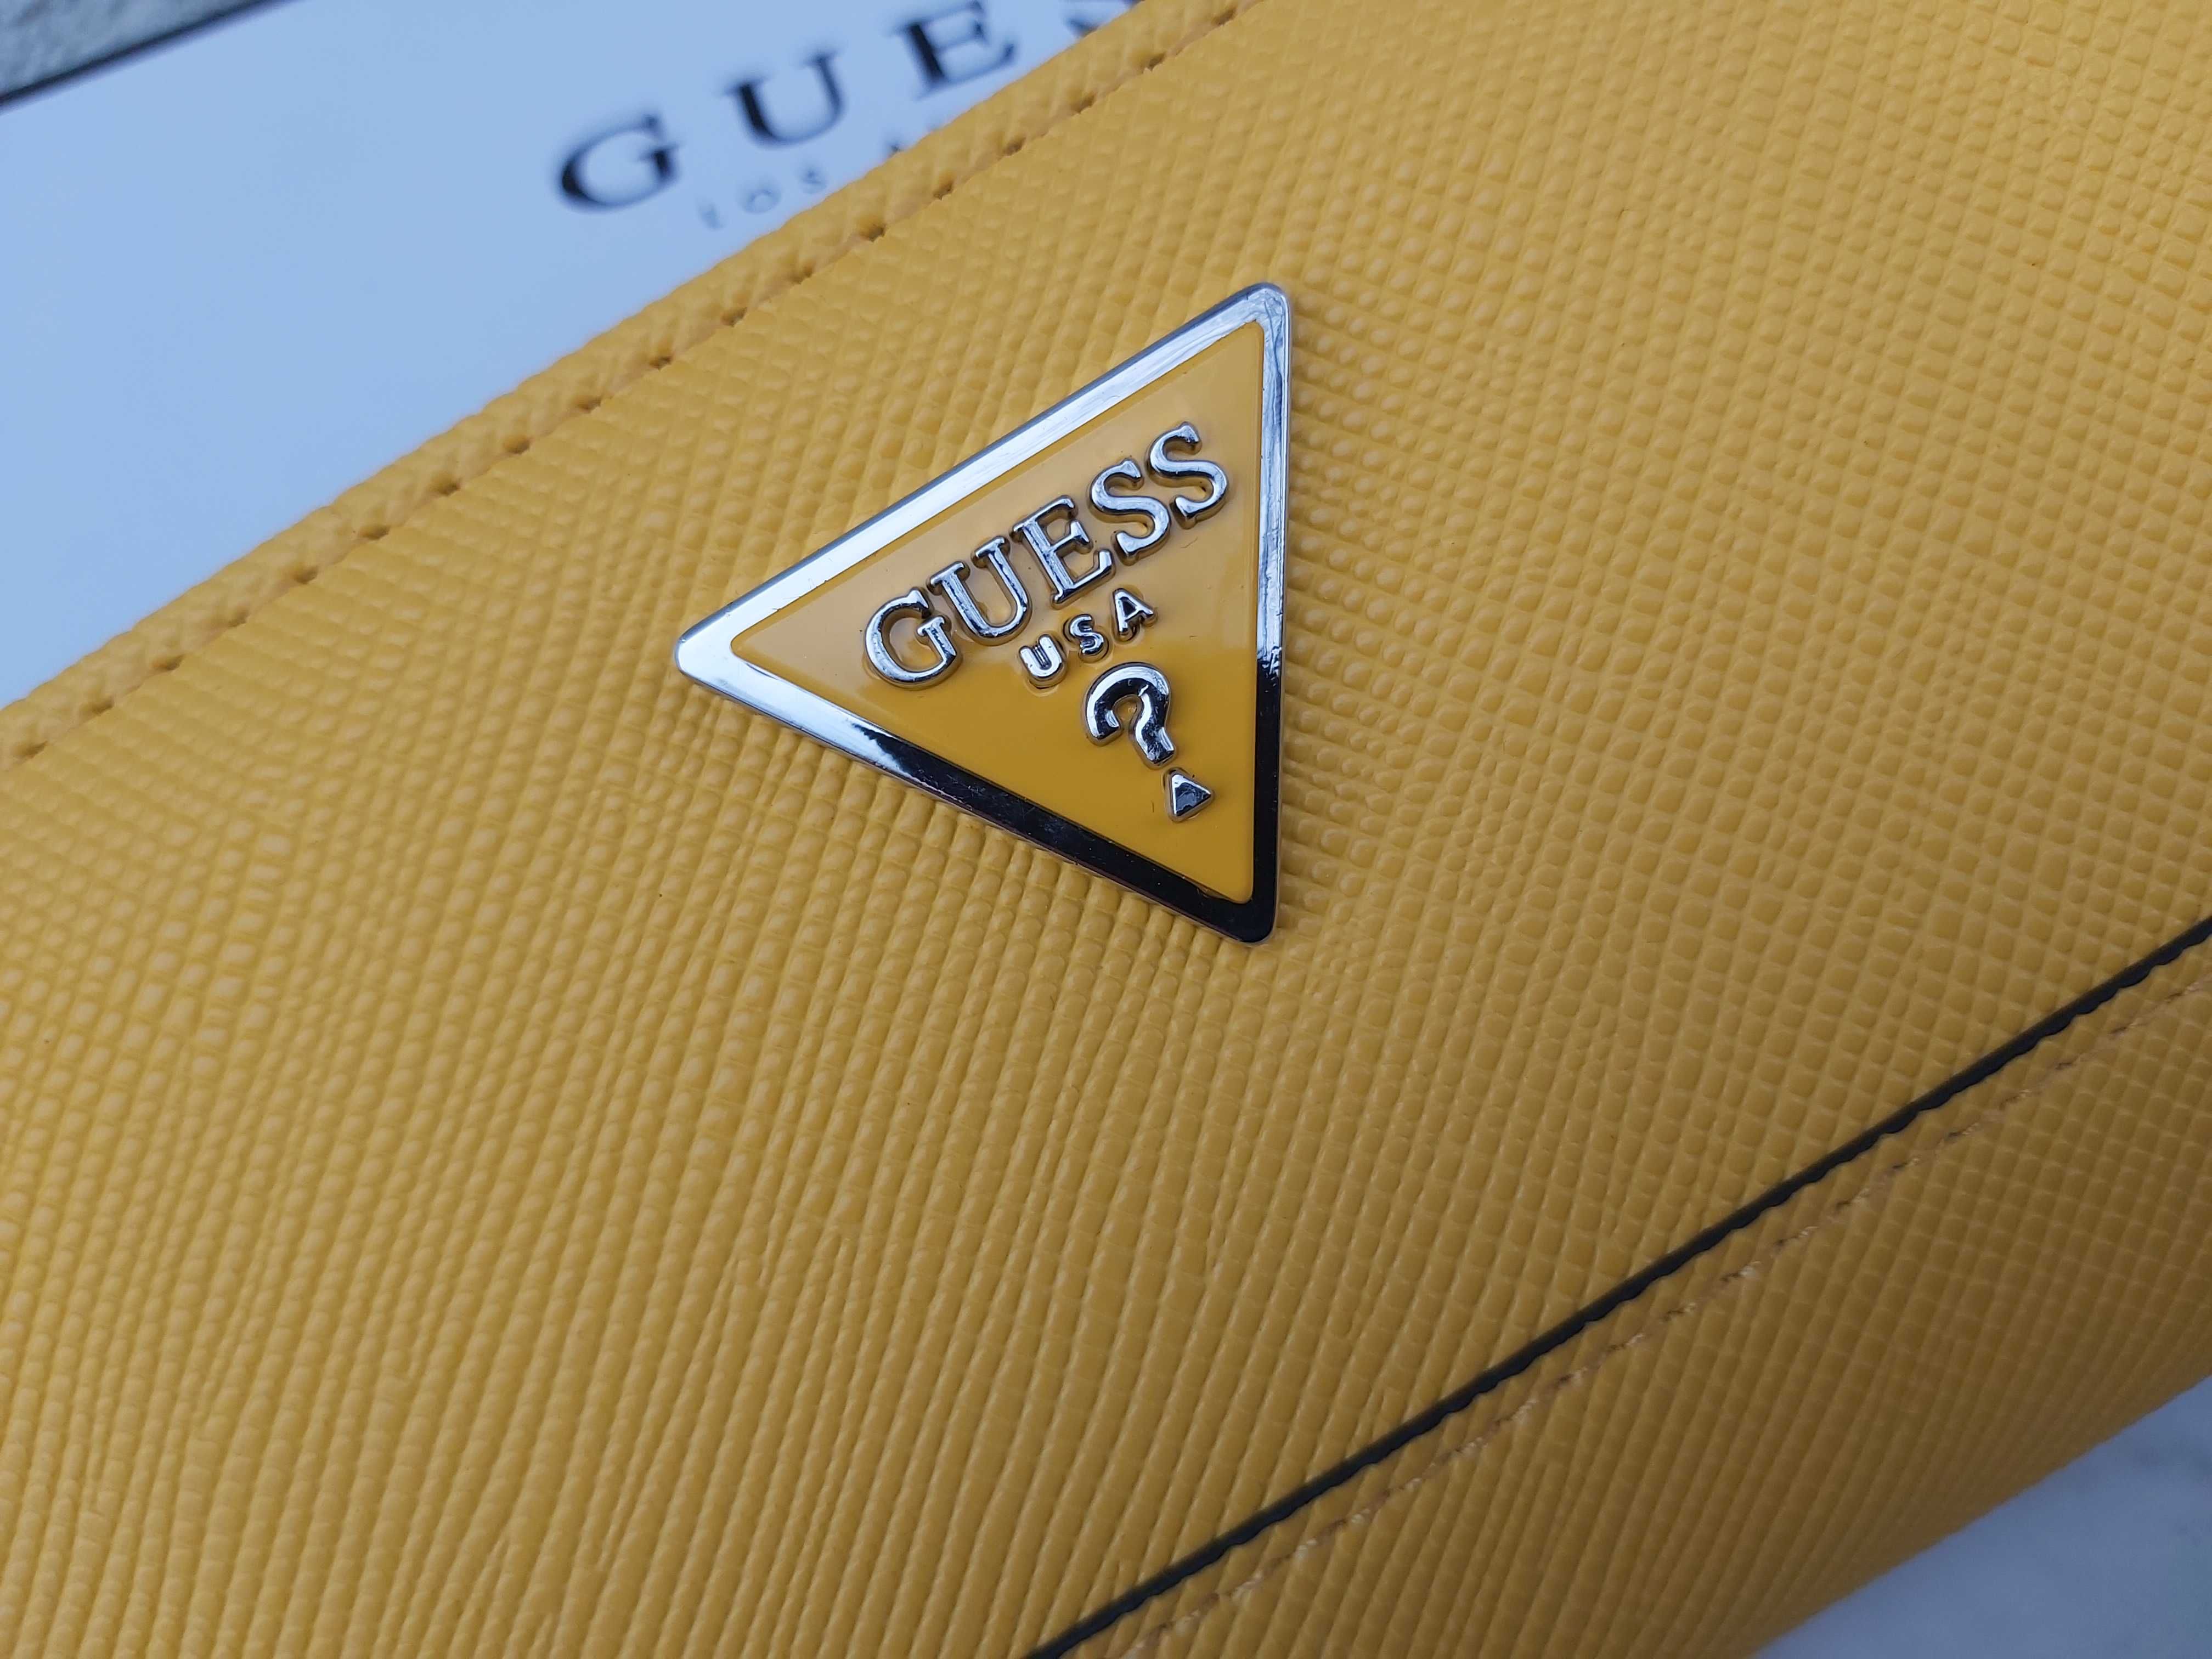 ‼️ NOWY żółty portfel Guess portmonetka duży sunshine a325